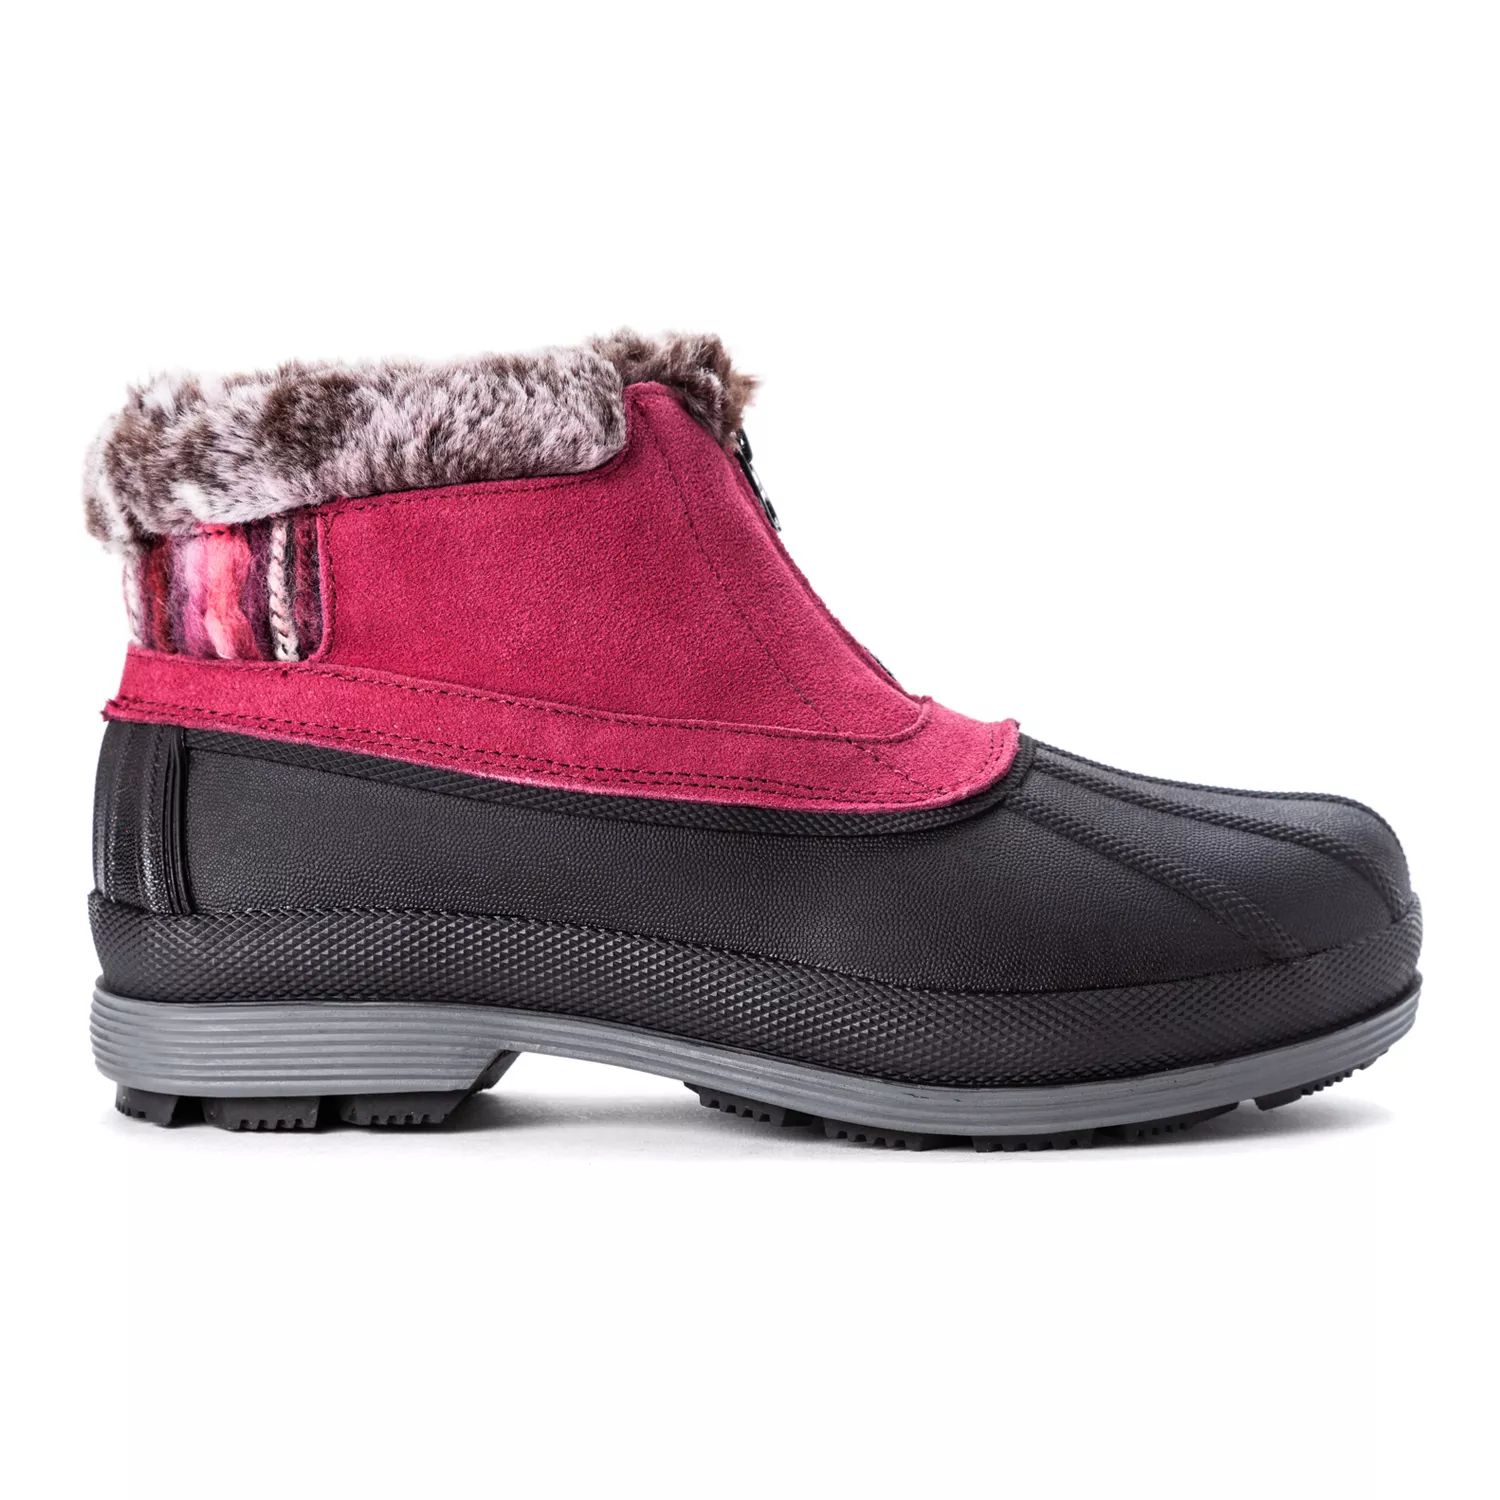 Женские непромокаемые зимние ботинки Propet Lumi Propet berry